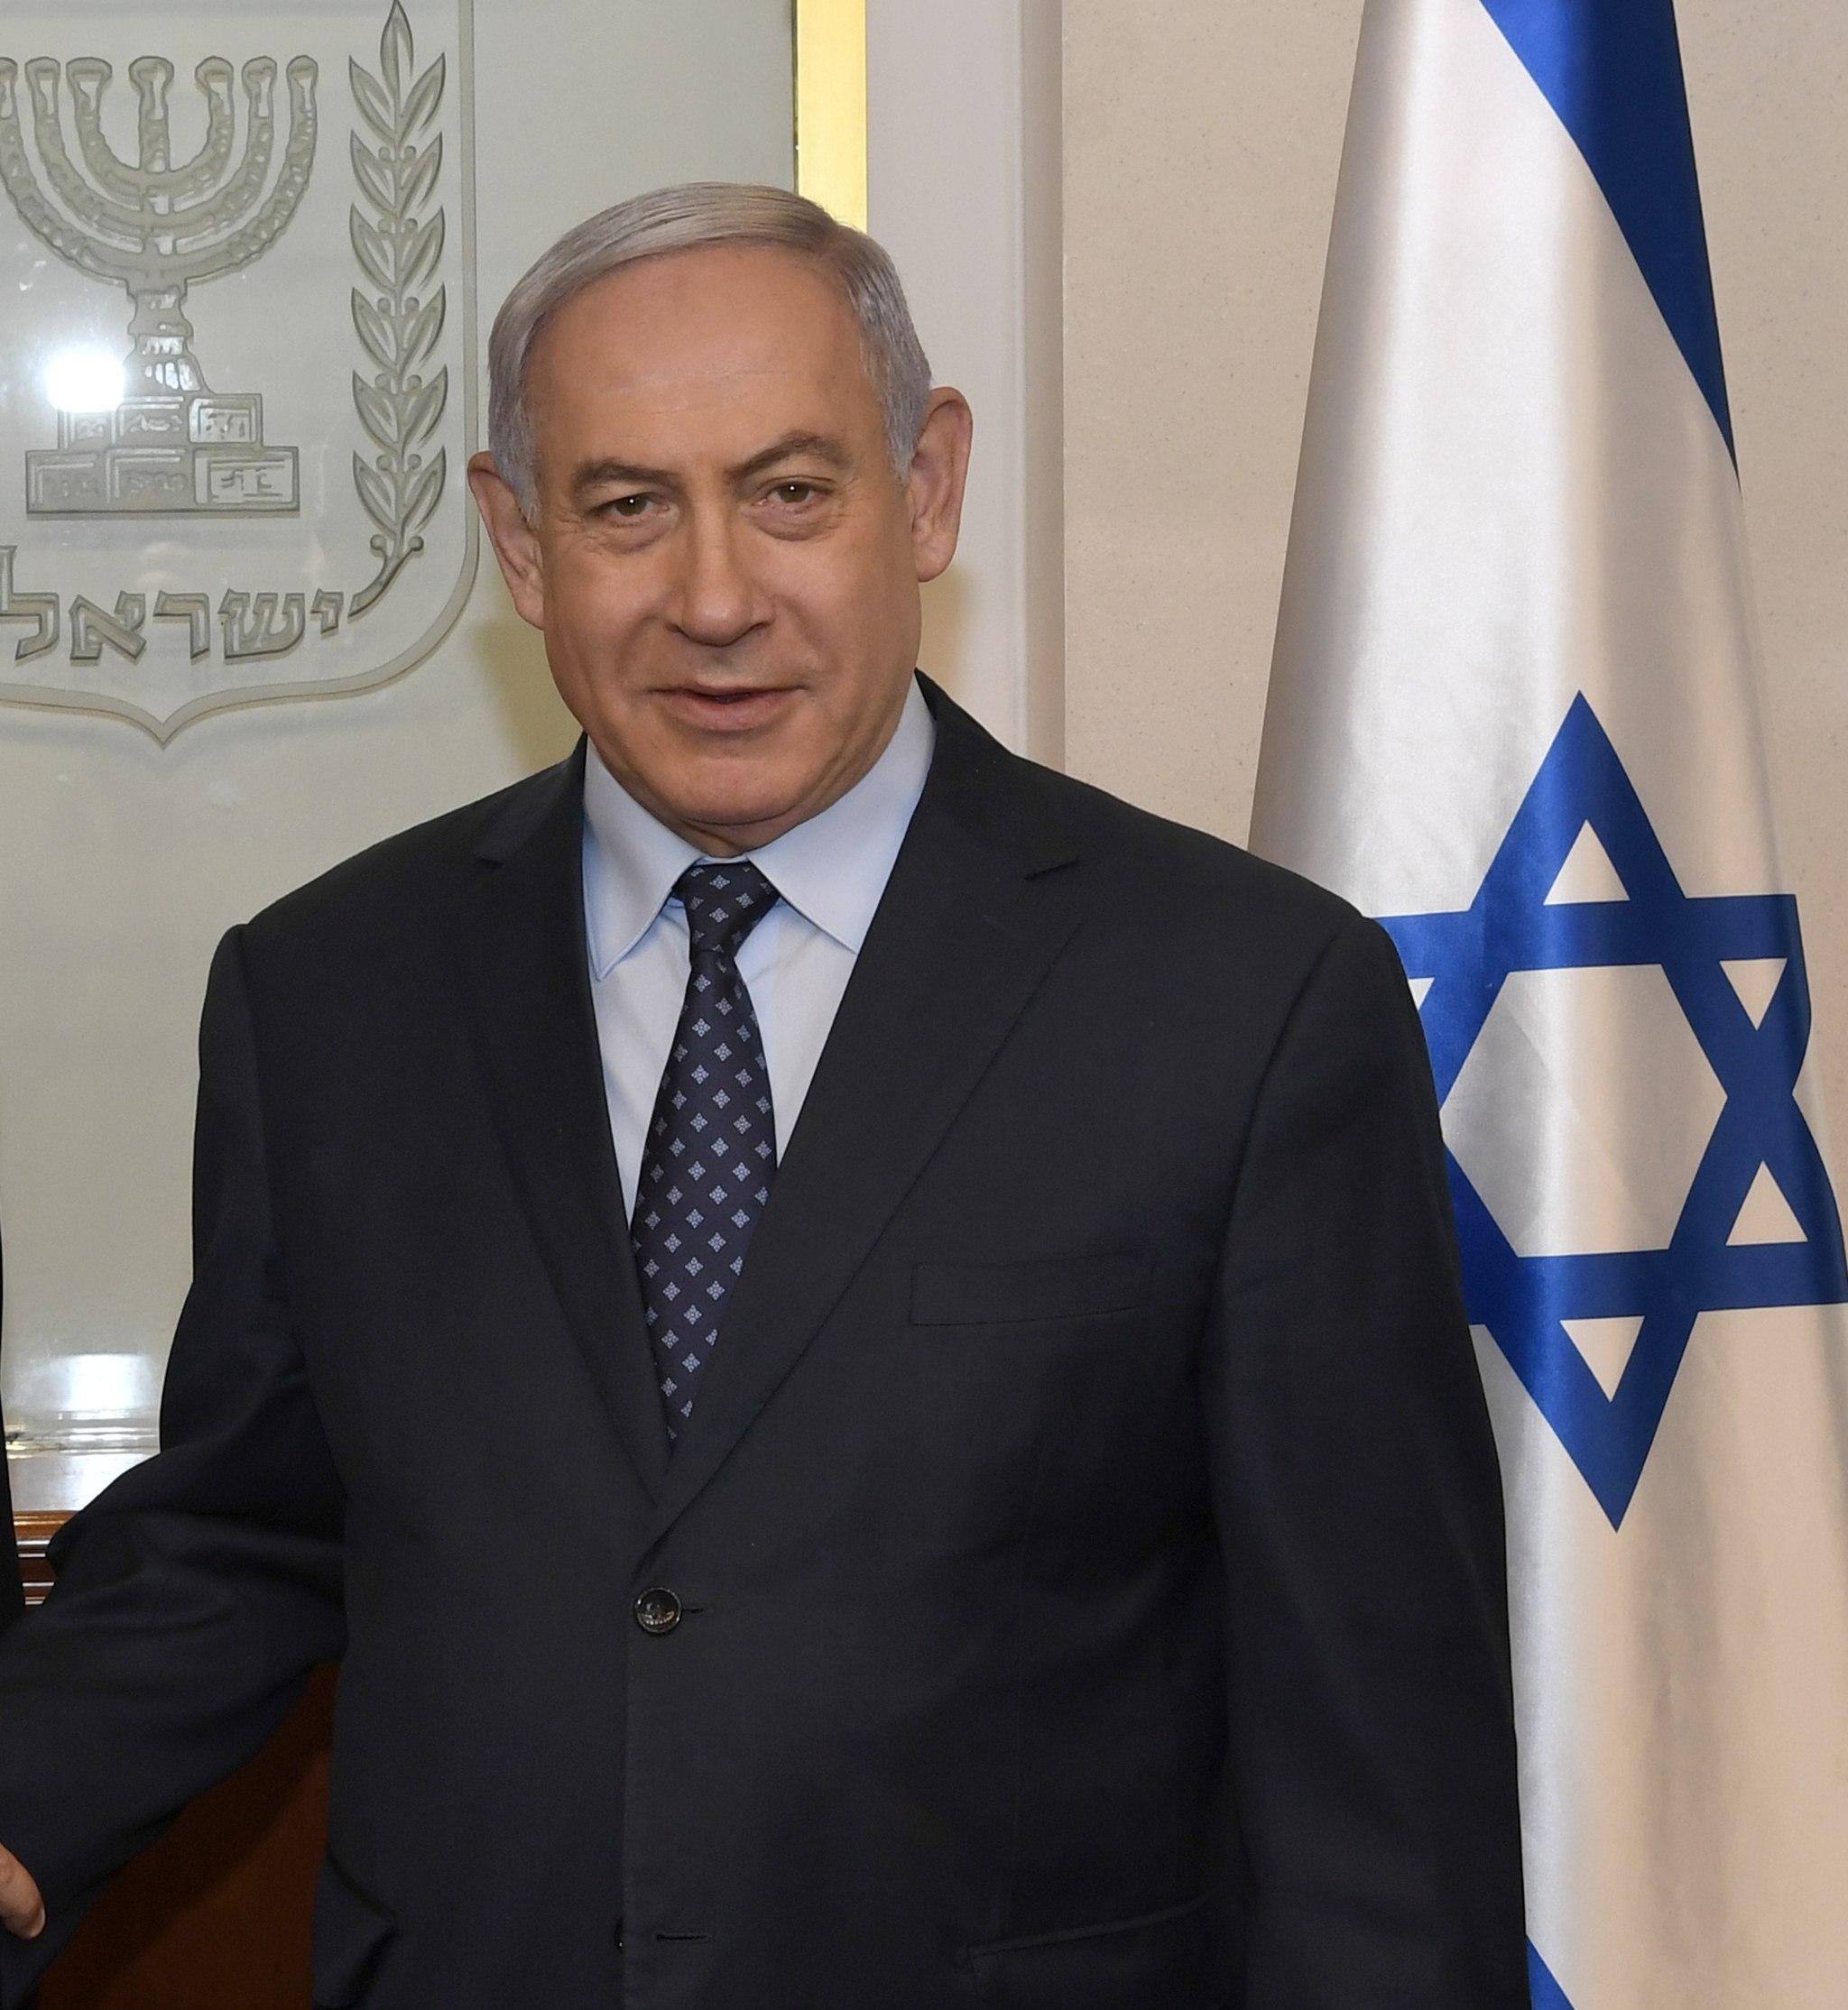 Bild: Matty STERN / U.S. Embassy Jerusalem, Benyamin Netanyahu, Aug. 2019 (48598784726) (cropped), CC BY 2.0, via Wikimedia Commons (keine Änderungen vorgenommen)